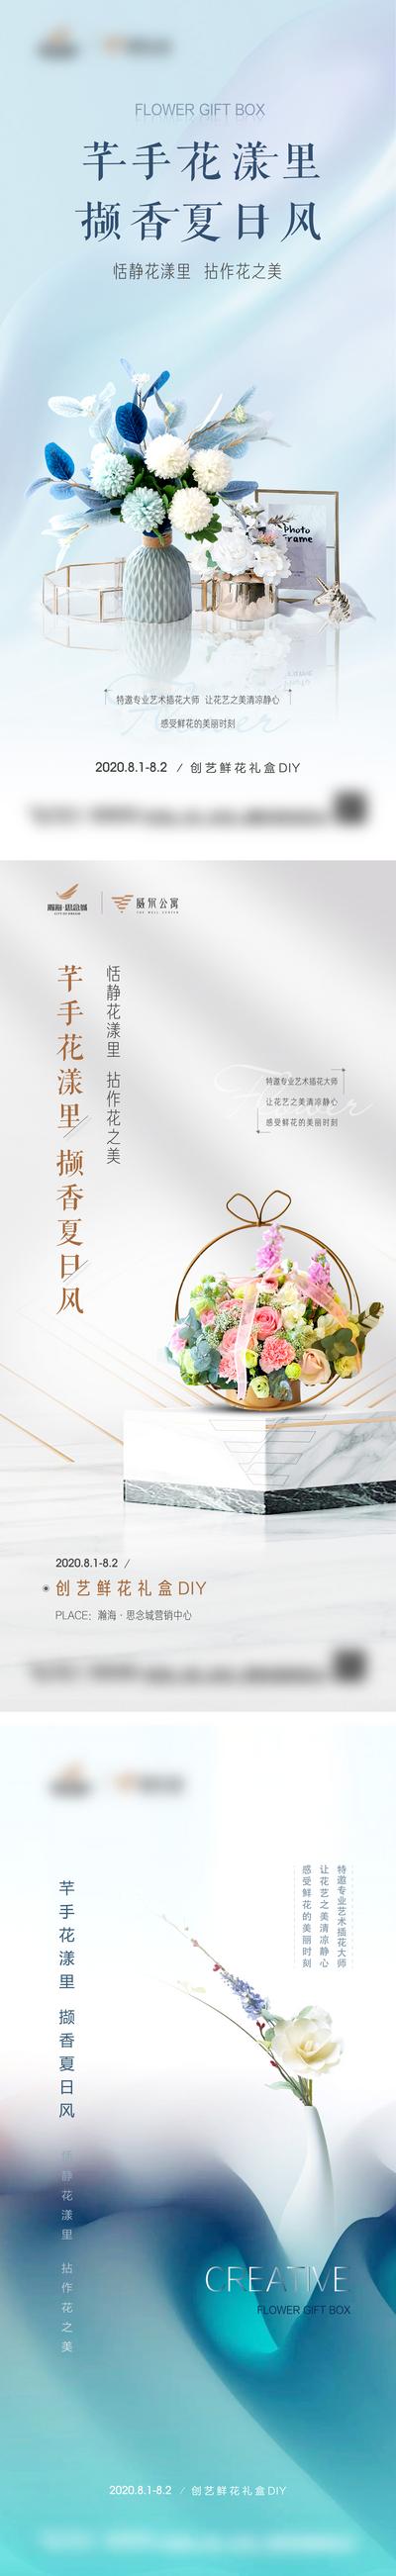 南门网 海报 房地产 暖场活动 插花 鲜花 DIY 礼盒 花束 